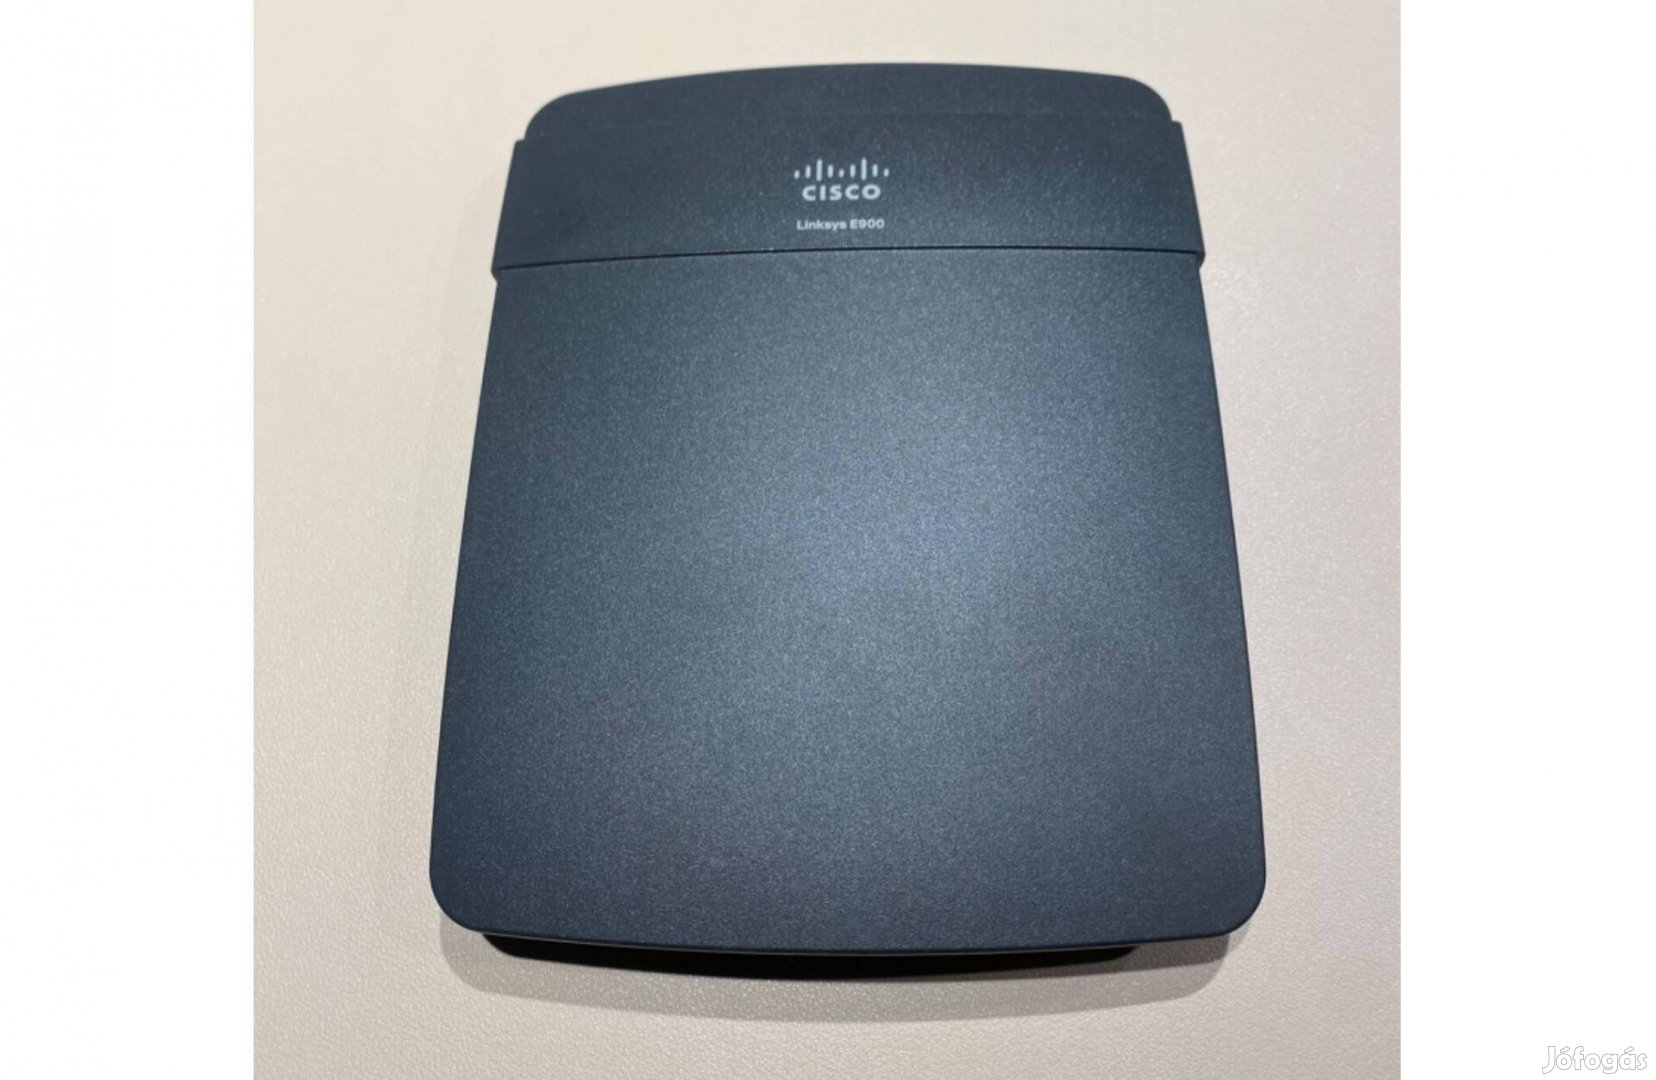 Újszerű CISCO Linksys E900 wifi router 300 Mbs eladó